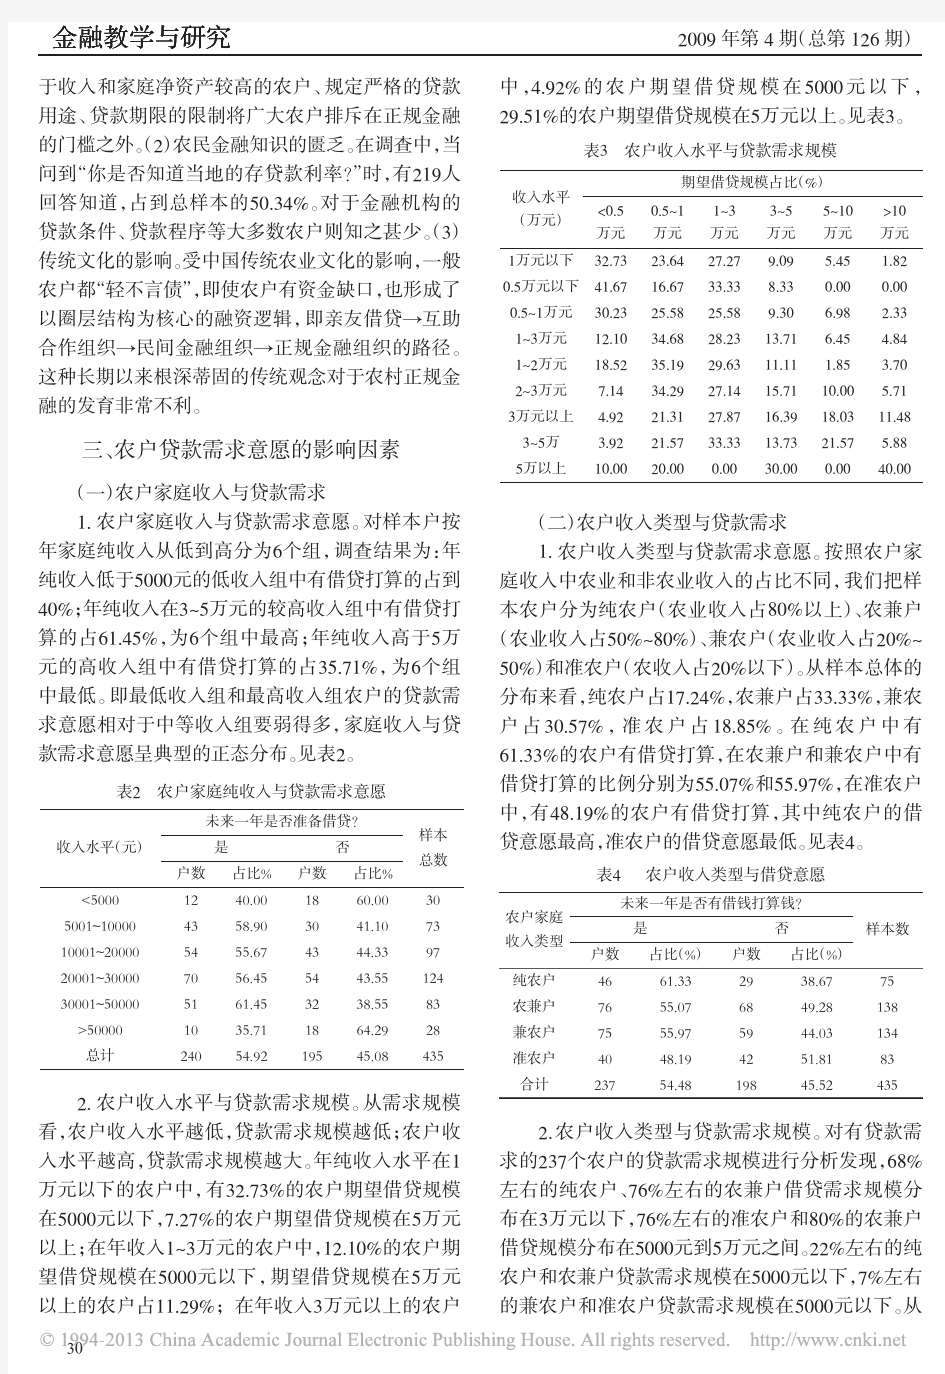 农民贷款需求意愿及其影响因素分析_河北省农户贷款需求状况调查